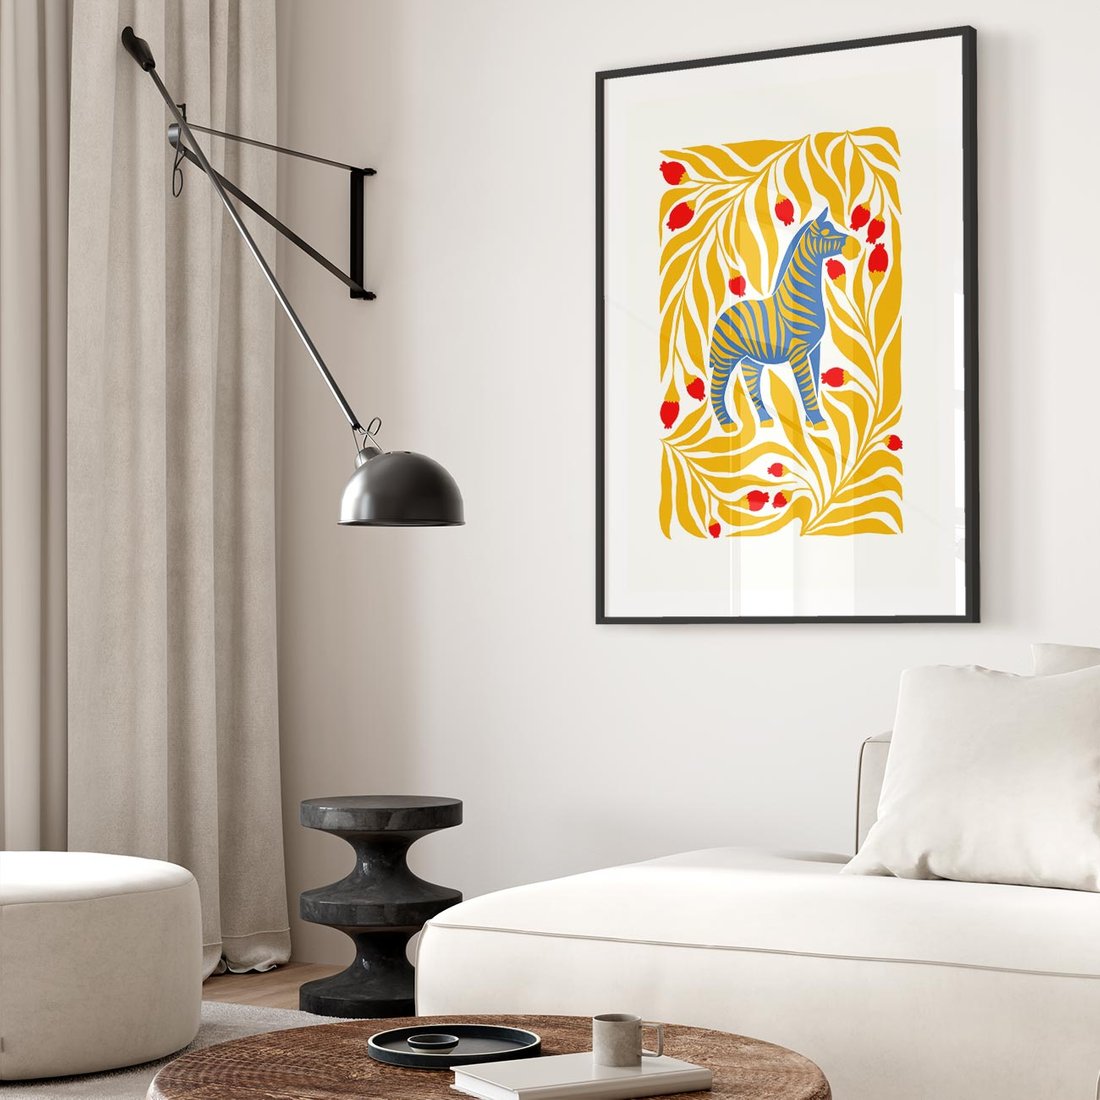 Plakat w ramie 30x40 - Zebra w Nowoczesności - abstrakcyjna nowoczesna grafika, pośrodku zebra - rama czarna